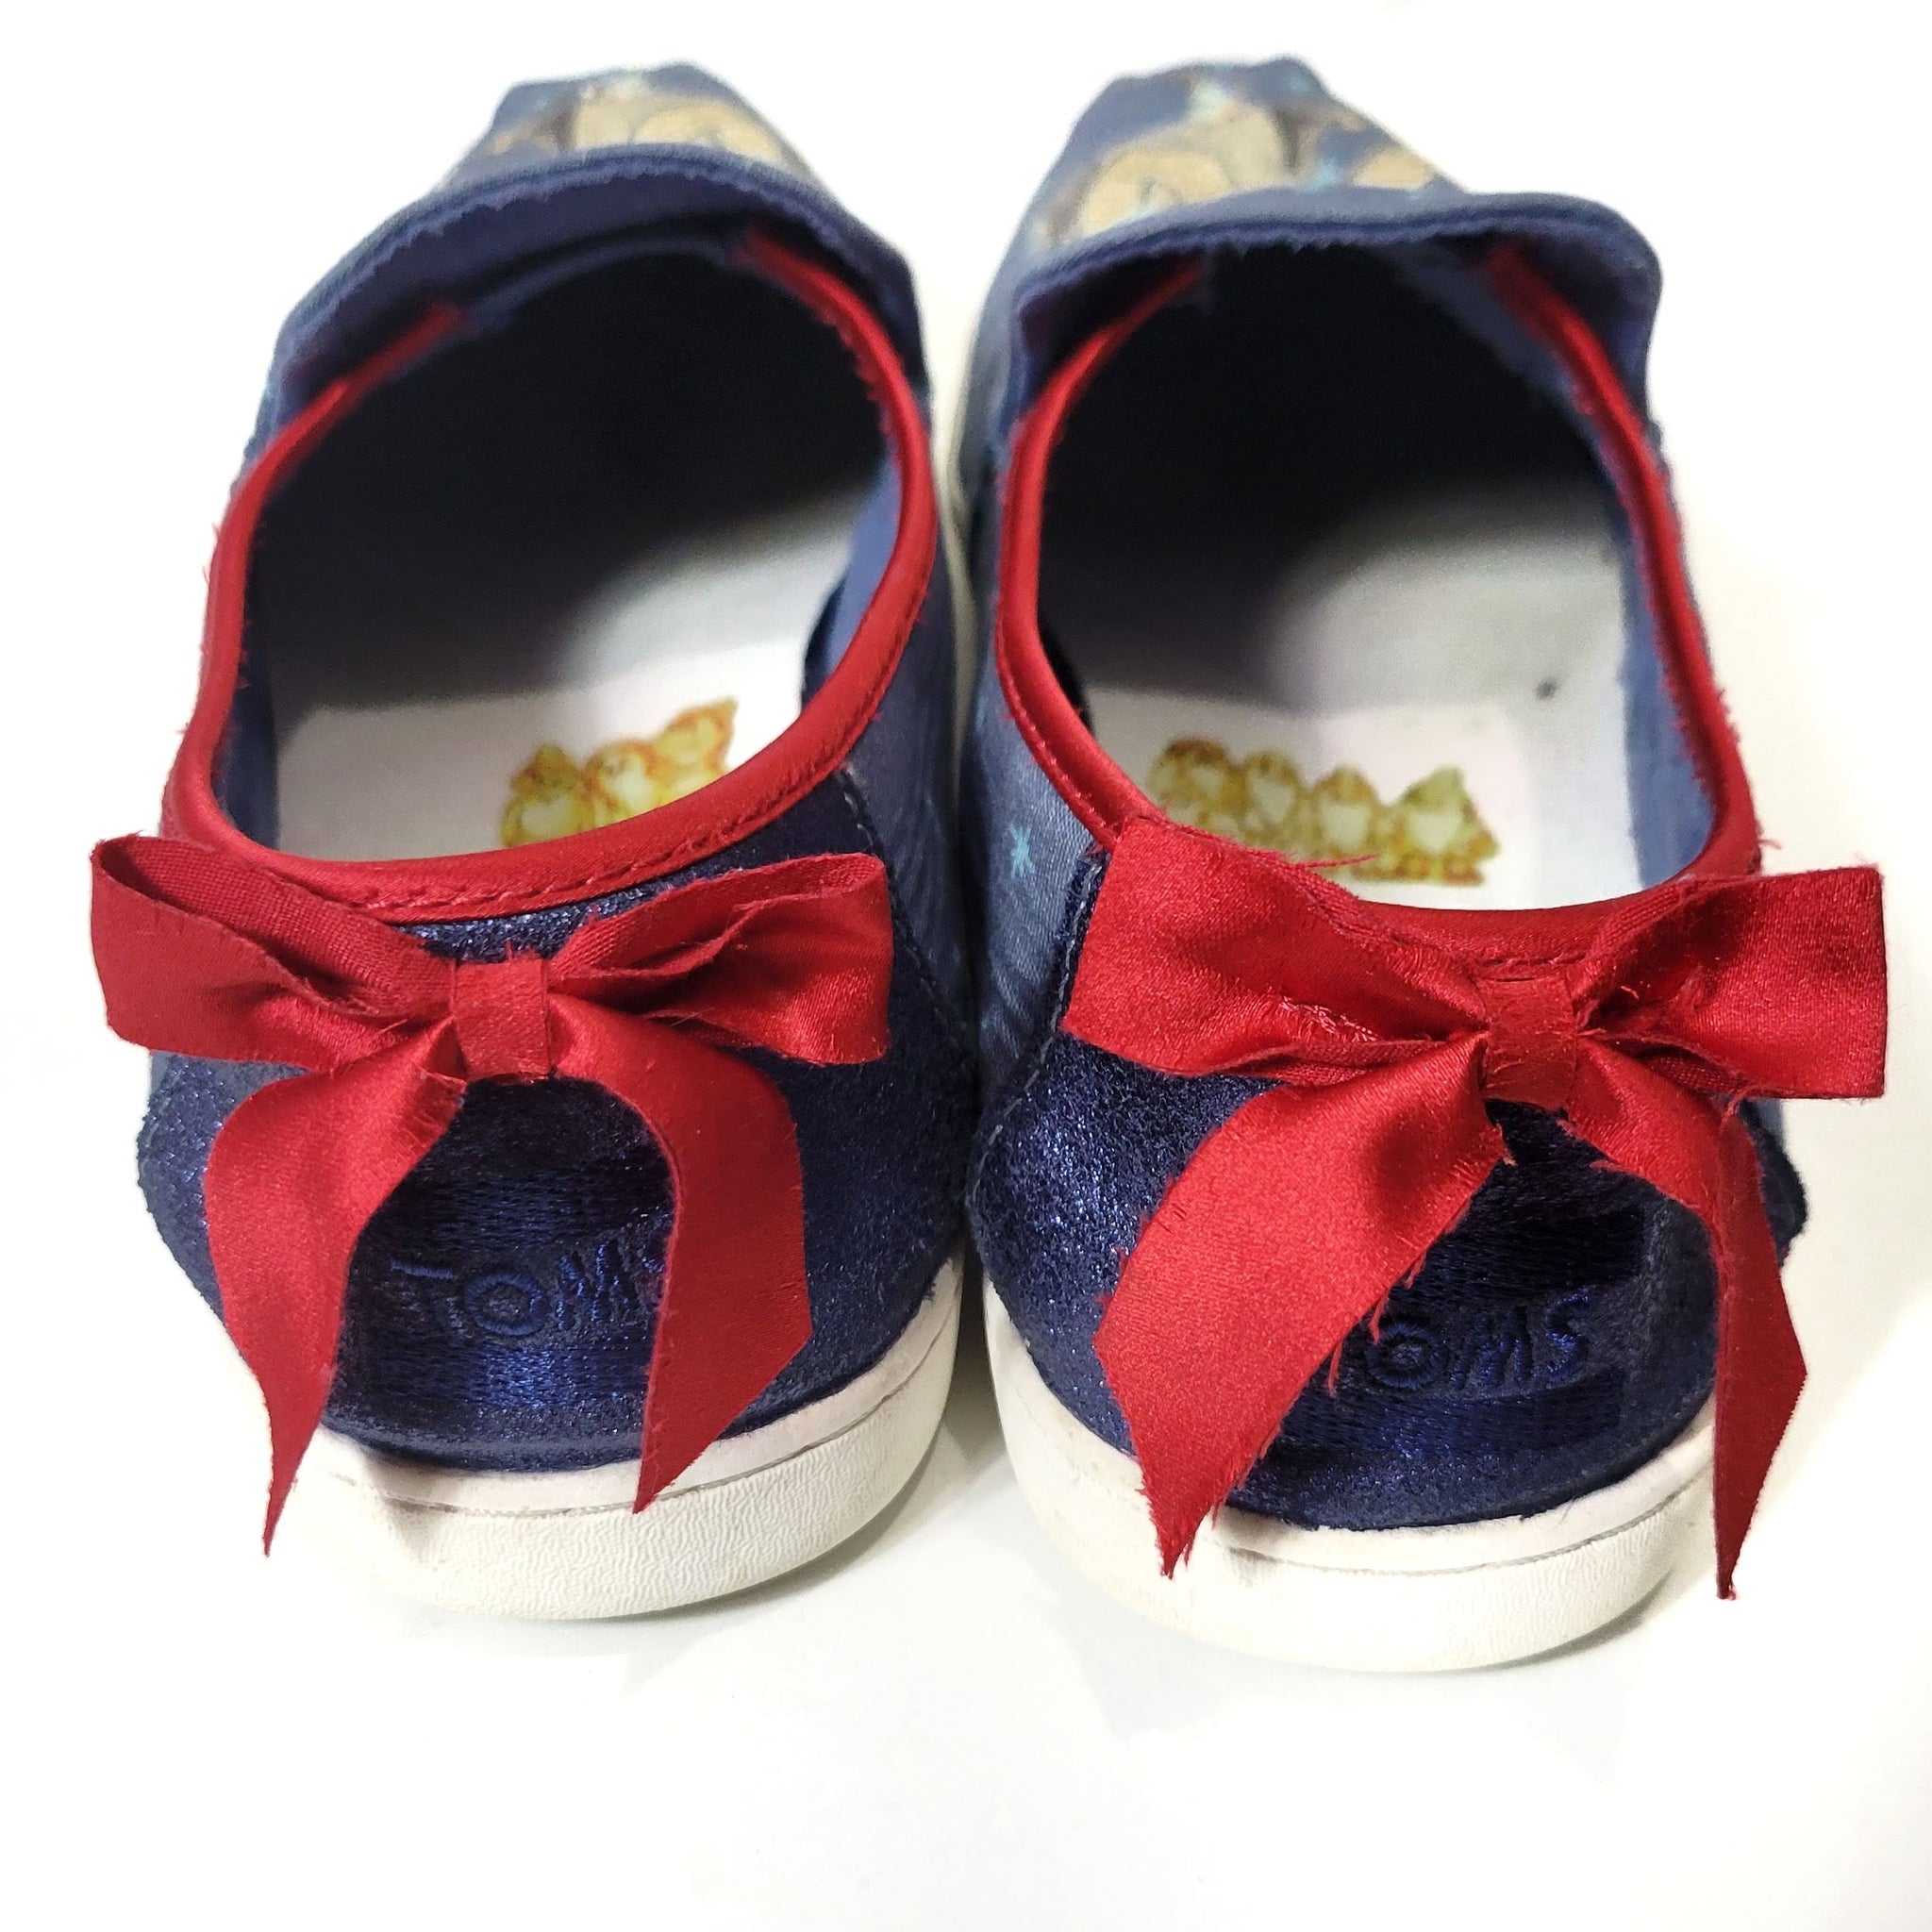 Toms x Disney Snow White Alpargata Slip On Shoes Size 7